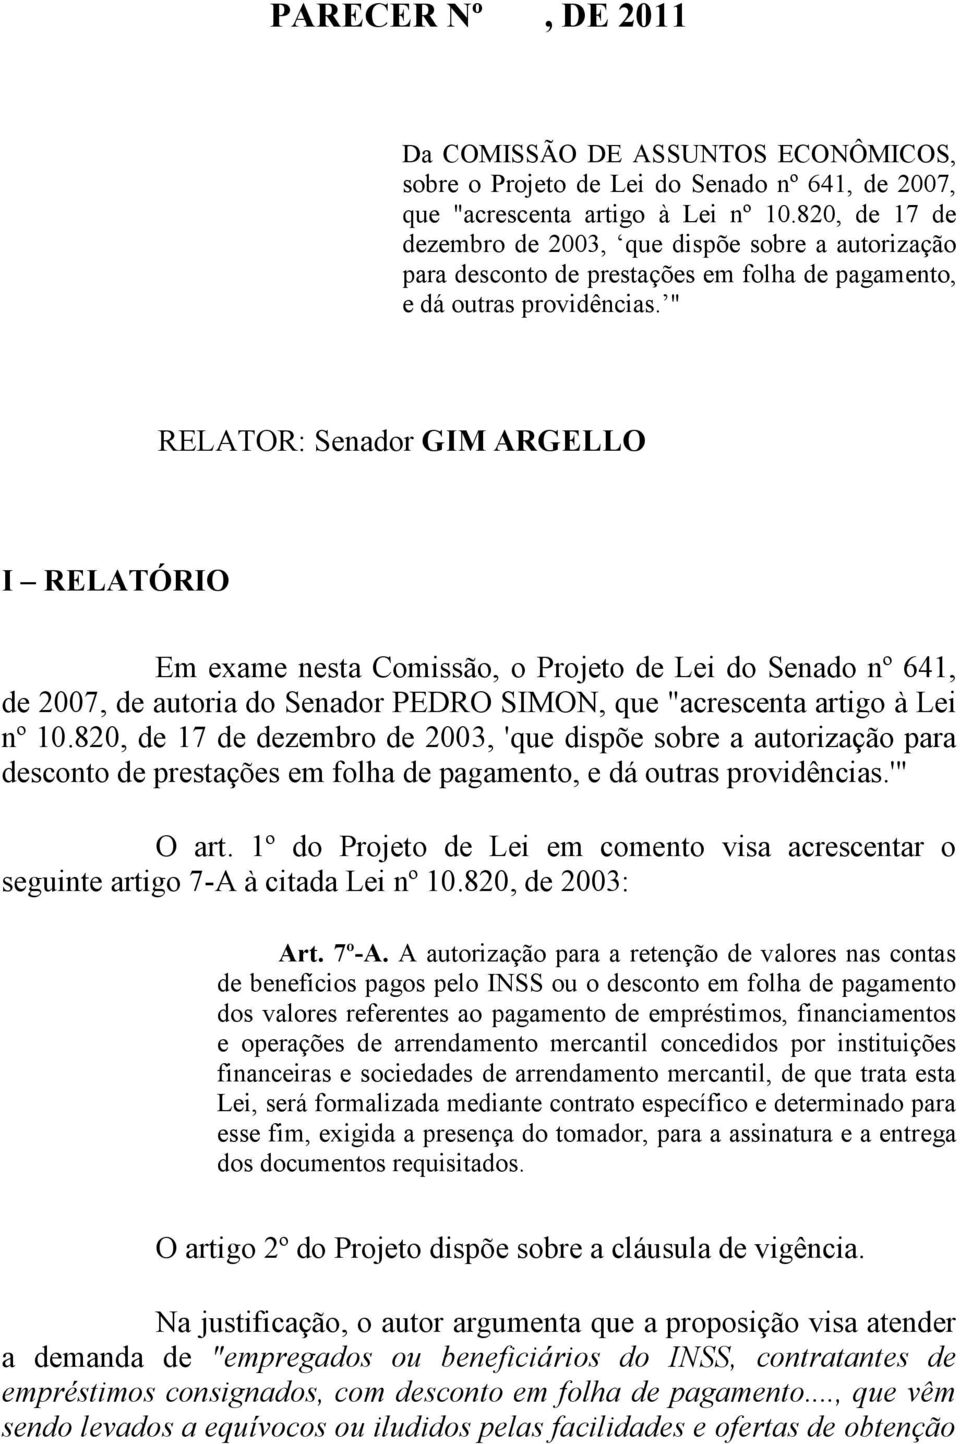 " RELATOR: Senador GIM ARGELLO I RELATÓRIO Em exame nesta Comissão, o Projeto de Lei do Senado nº 641, de 2007, de autoria do Senador PEDRO SIMON, que "acrescenta artigo à Lei nº 10.